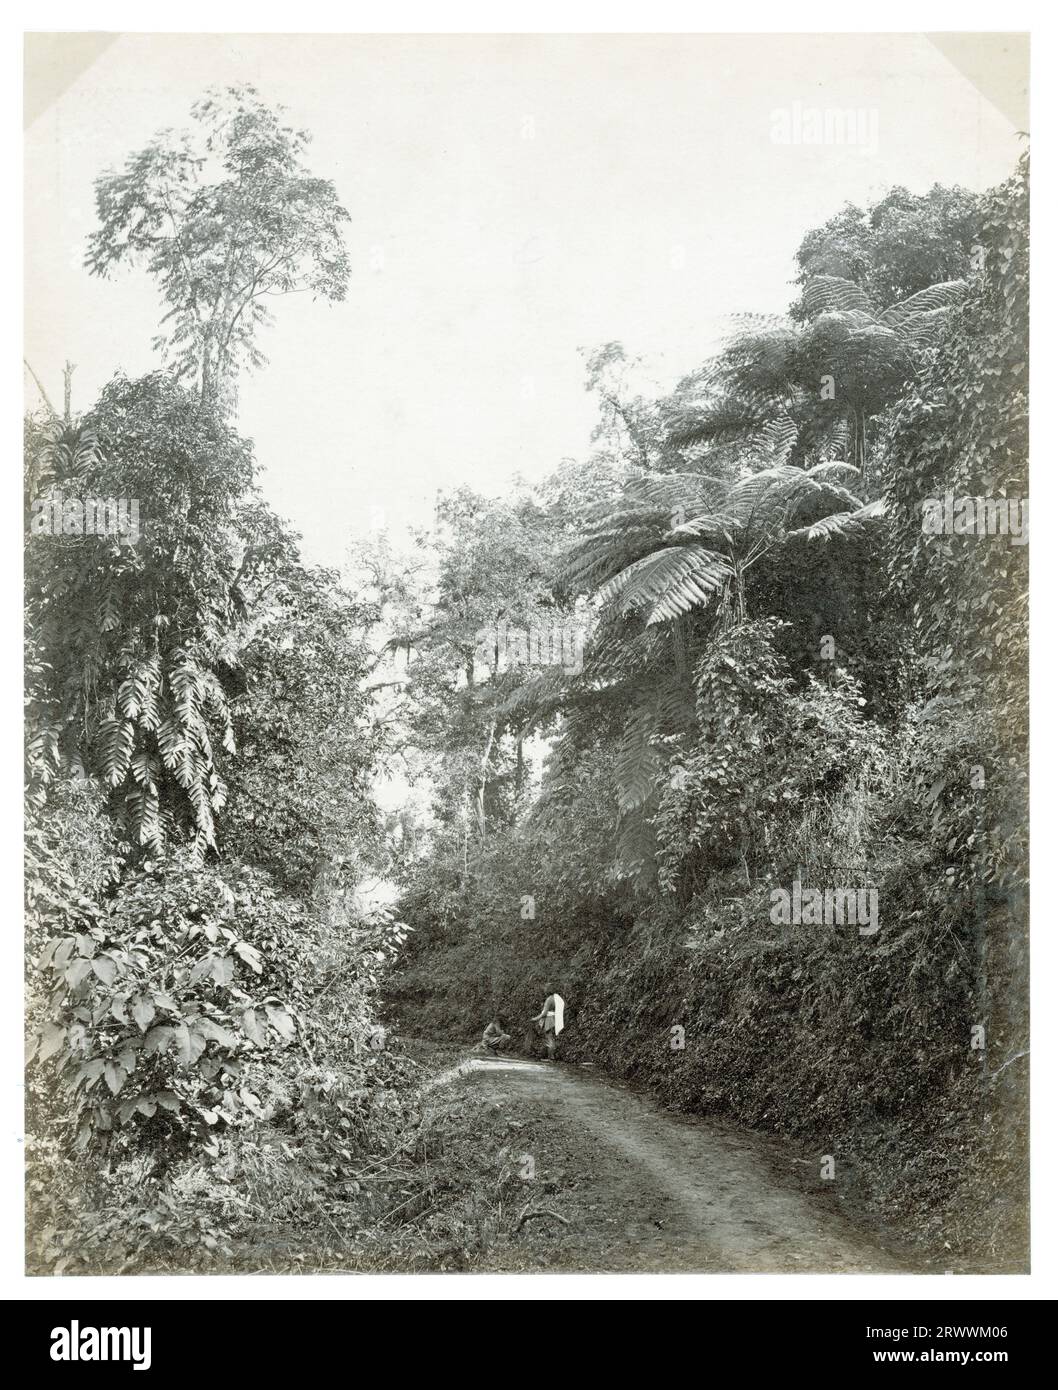 Ein Wanderweg ist mit tropischem Laub und Farnen gesäumt. Ein Einheimischer hockt auf dem Weg und ein anderer steht. Die Bildunterschrift lautet: A Darjeeling Lane, with Riesen Ferns. Stockfoto